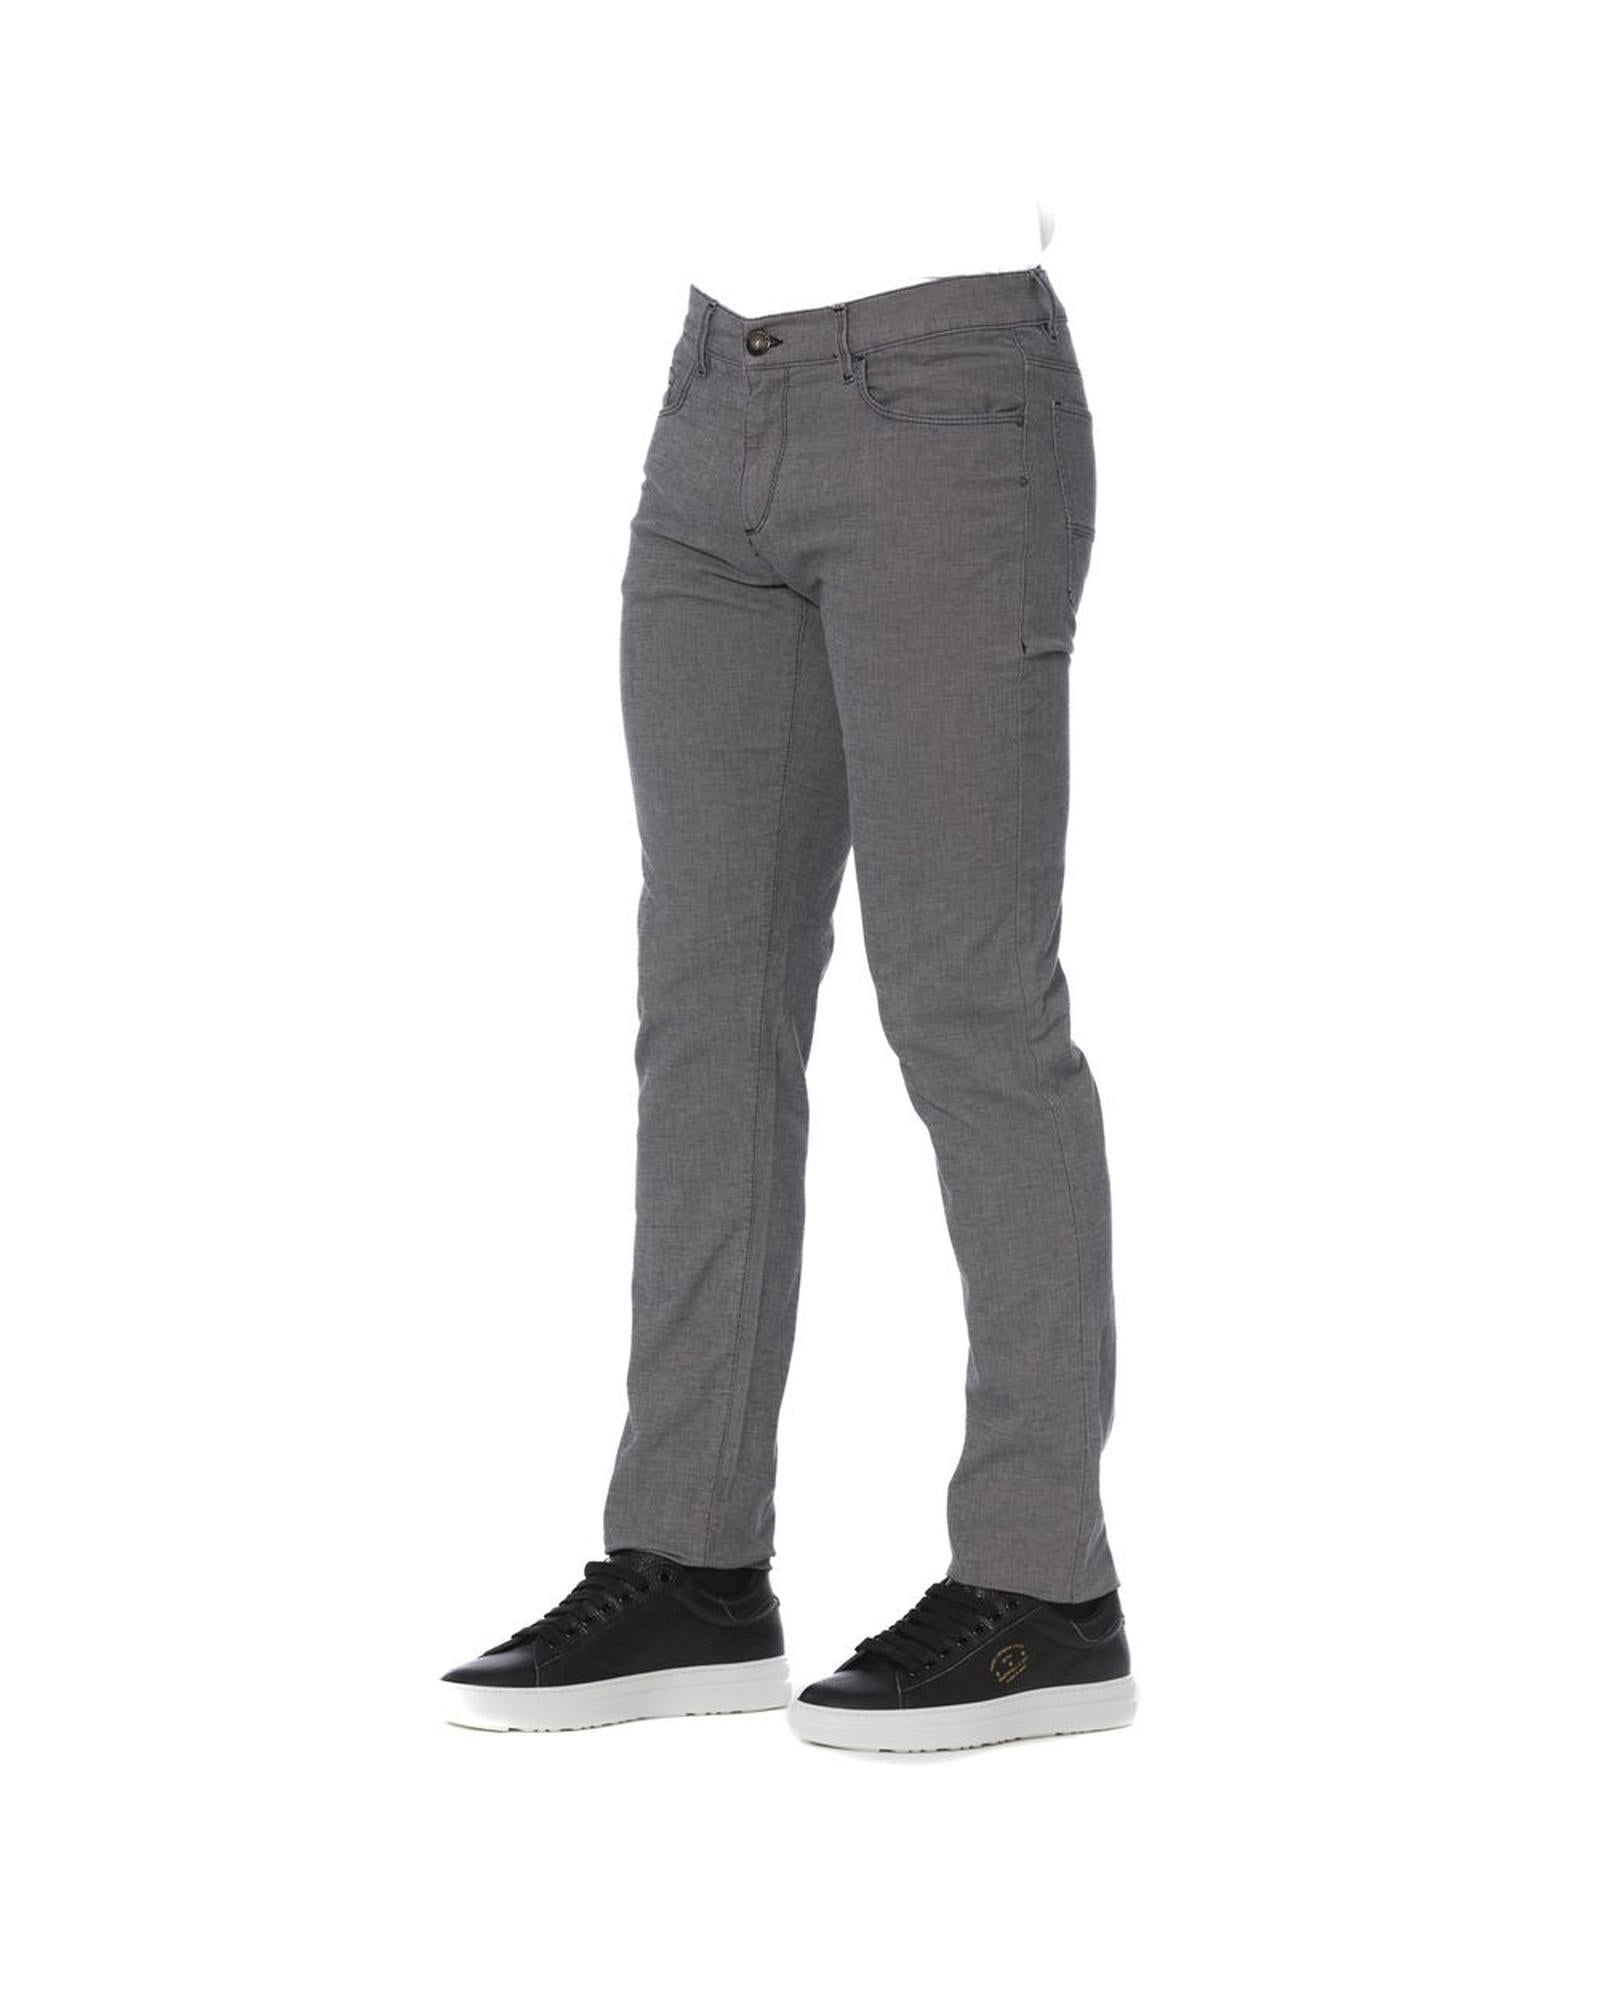 Men's Gray Cotton Jeans & Pant - W40 US